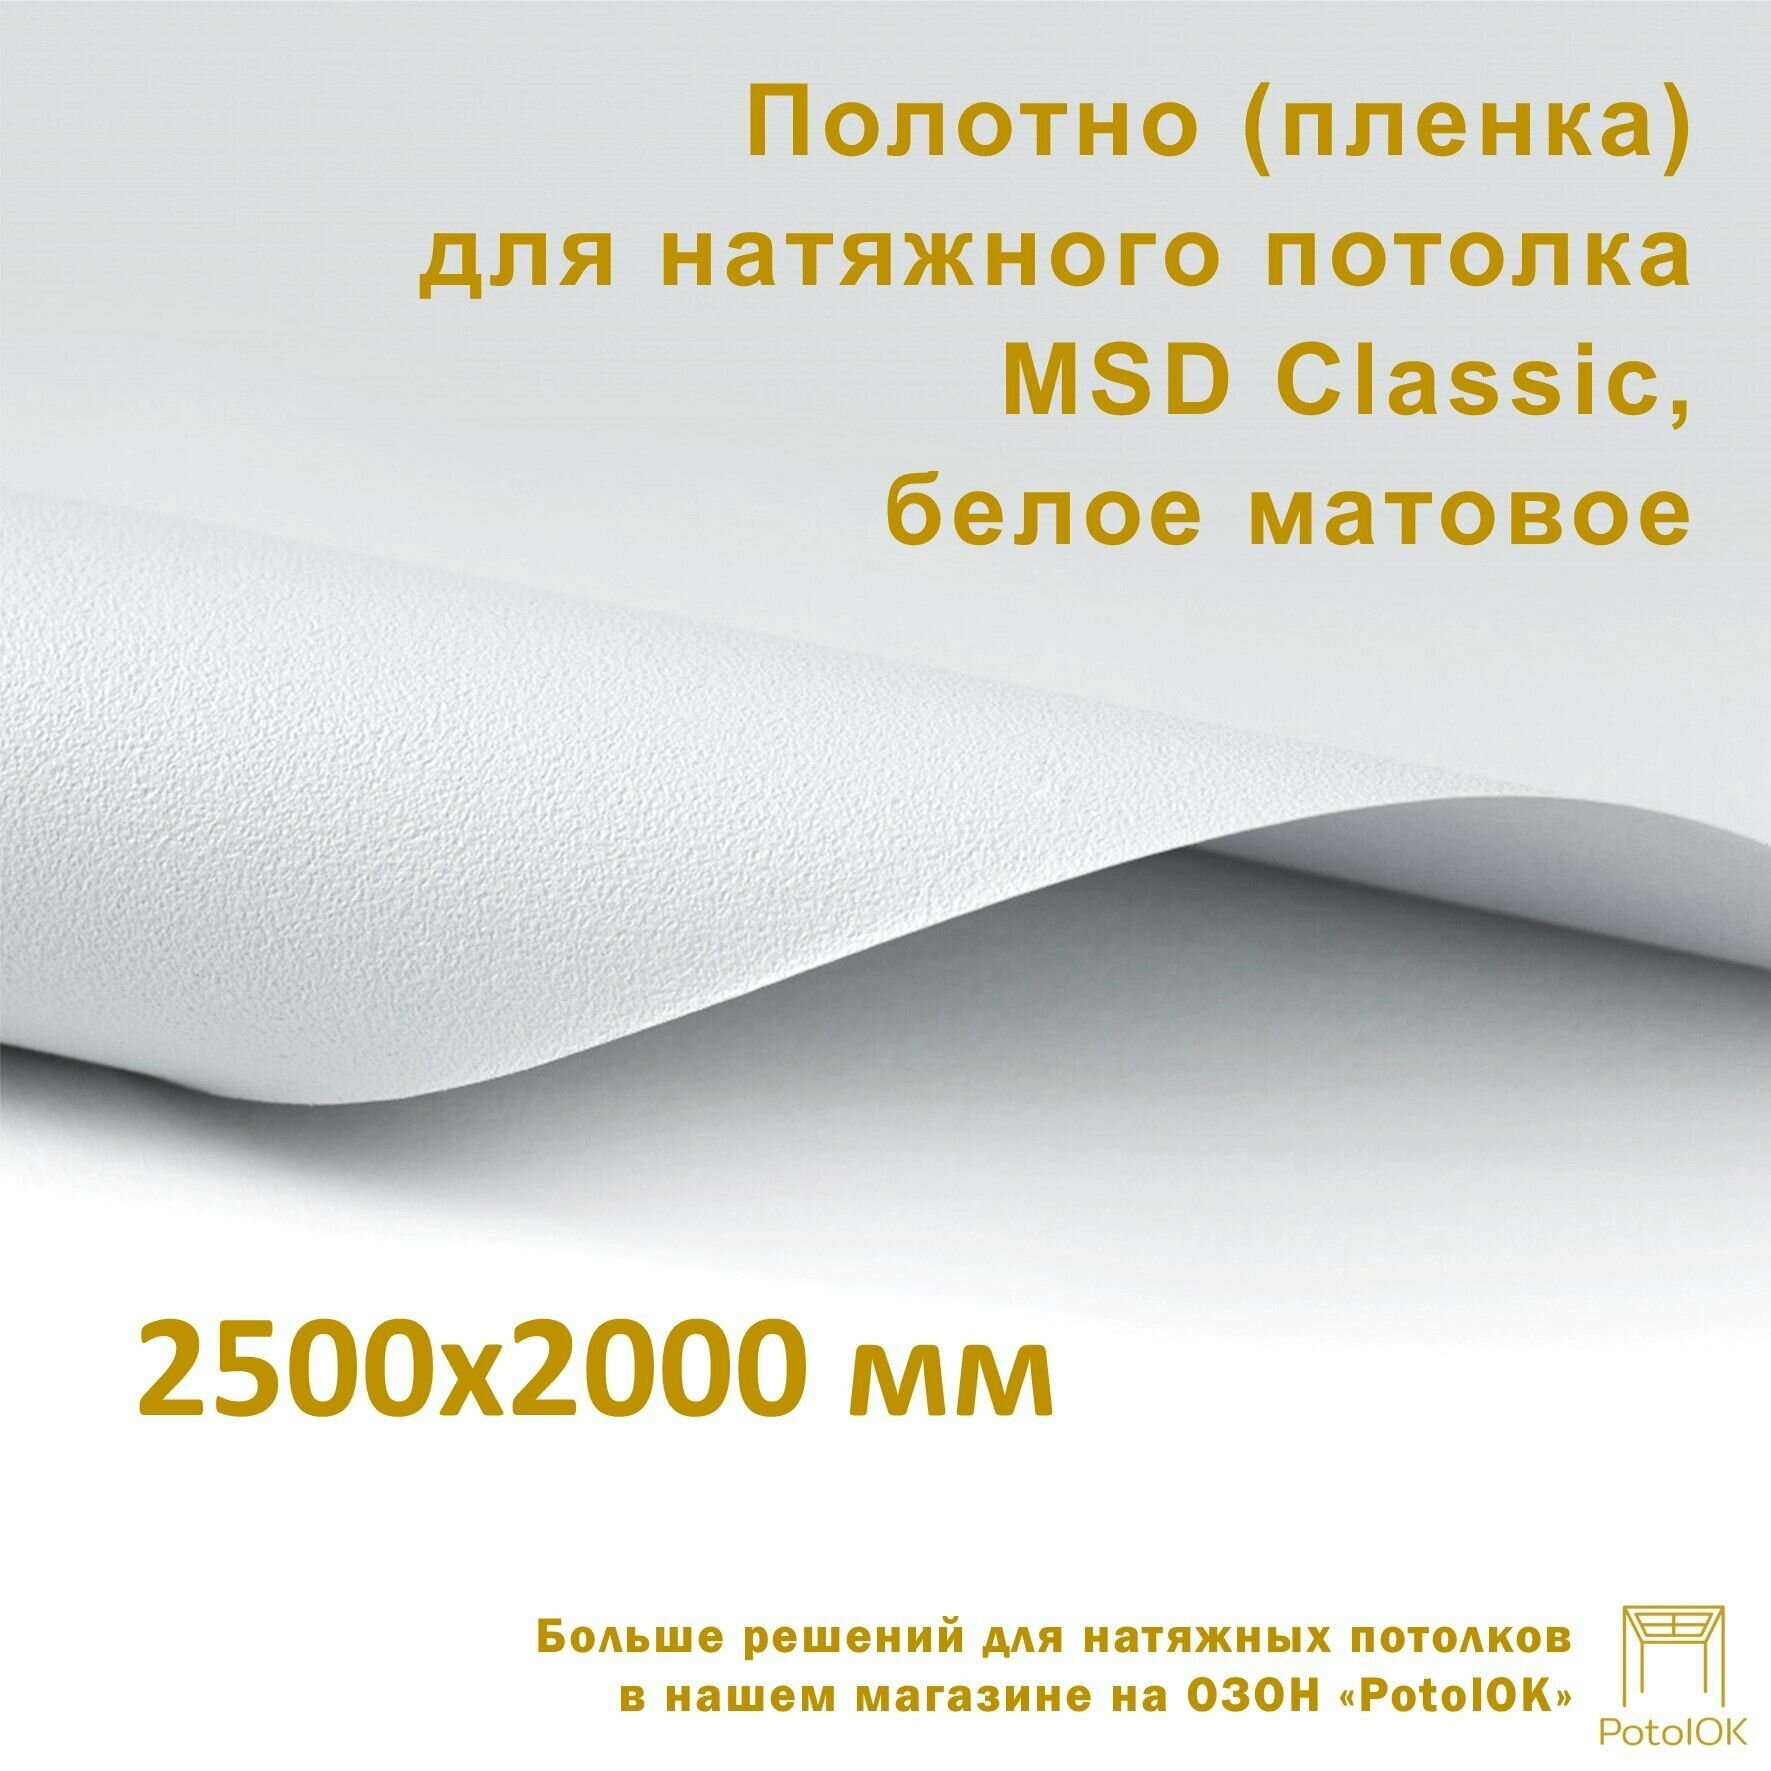 Полотно (пленка) для натяжного потолка MSD CLASSIC, белое матовое, 2500x2000 мм